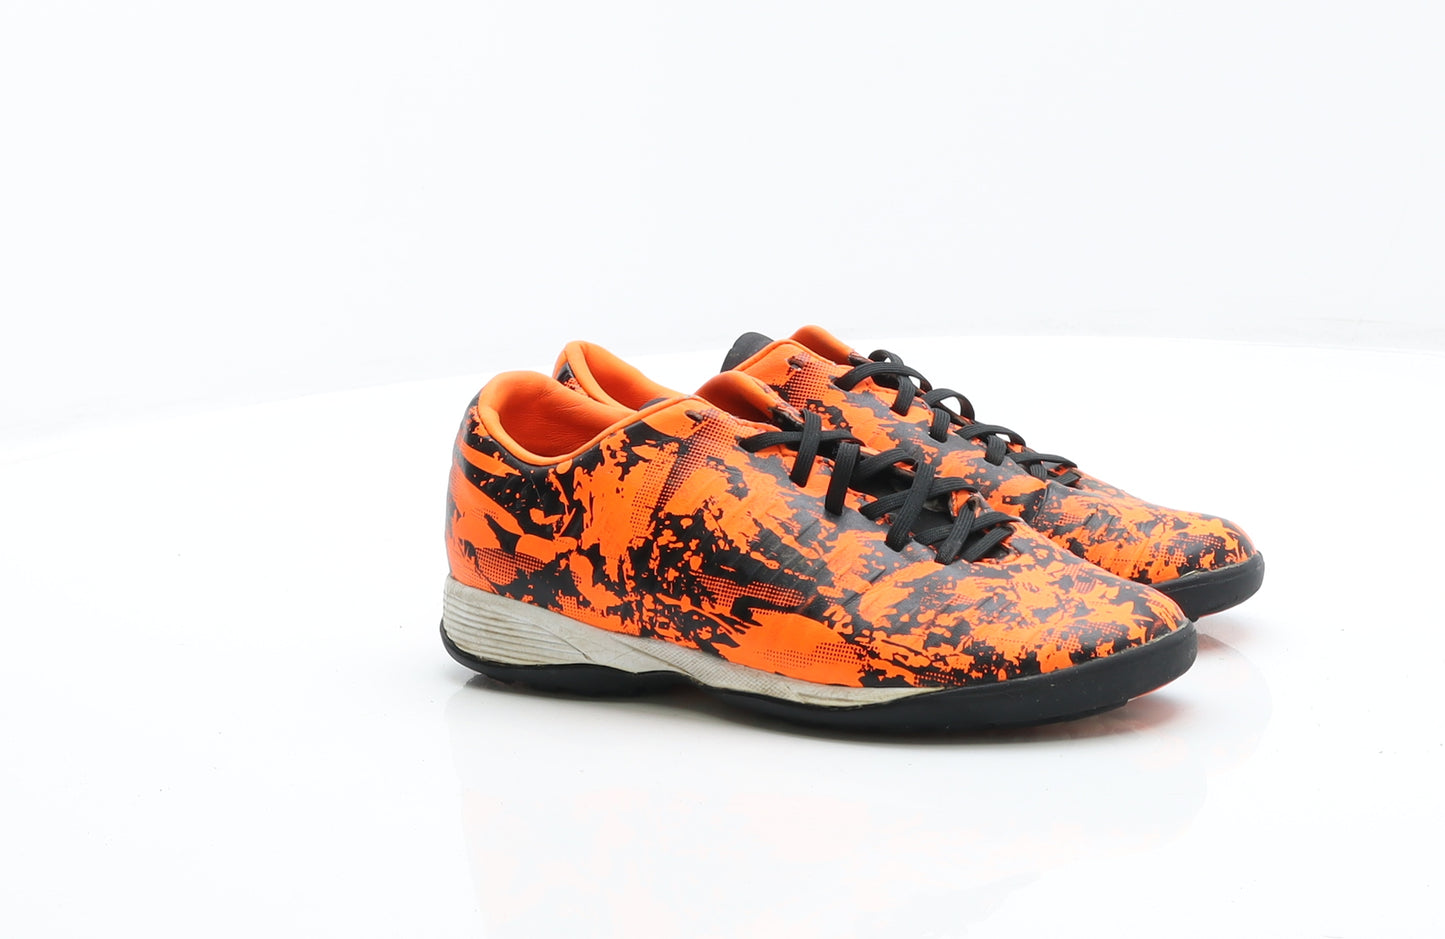 Sondico Boys Orange Flecked Leather Trainer UK 1 - Football Boots